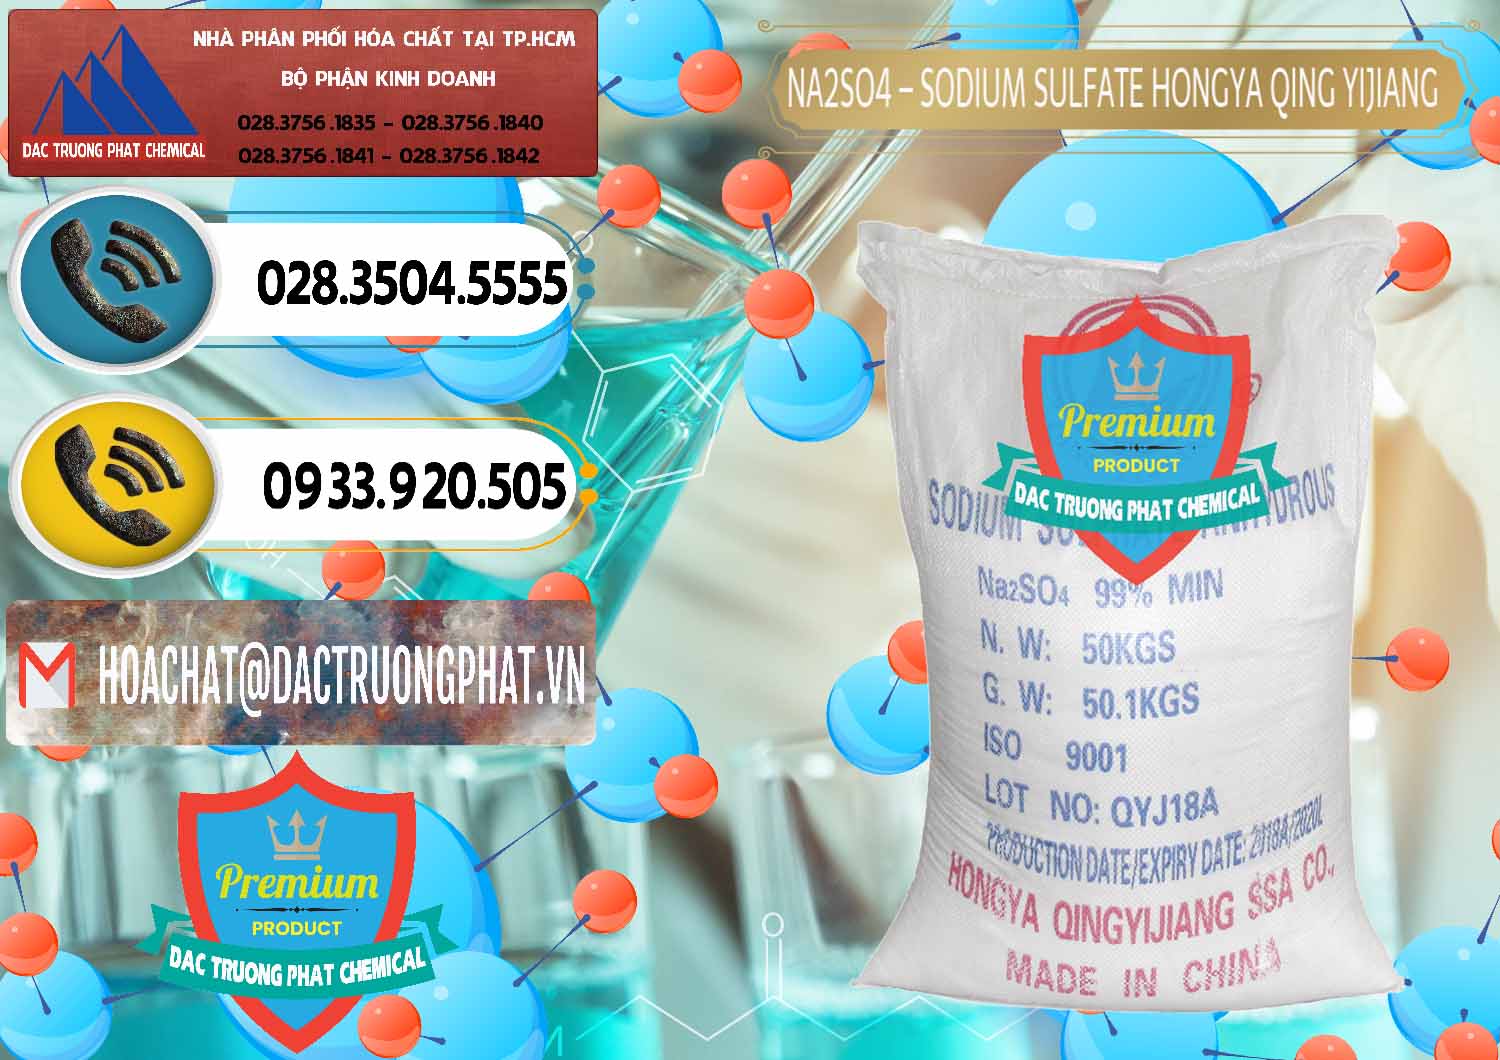 Bán - phân phối Sodium Sulphate - Muối Sunfat Na2SO4 Logo Cánh Bườm Hongya Qing Yi Trung Quốc China - 0098 - Nơi chuyên cung cấp _ kinh doanh hóa chất tại TP.HCM - hoachatdetnhuom.vn